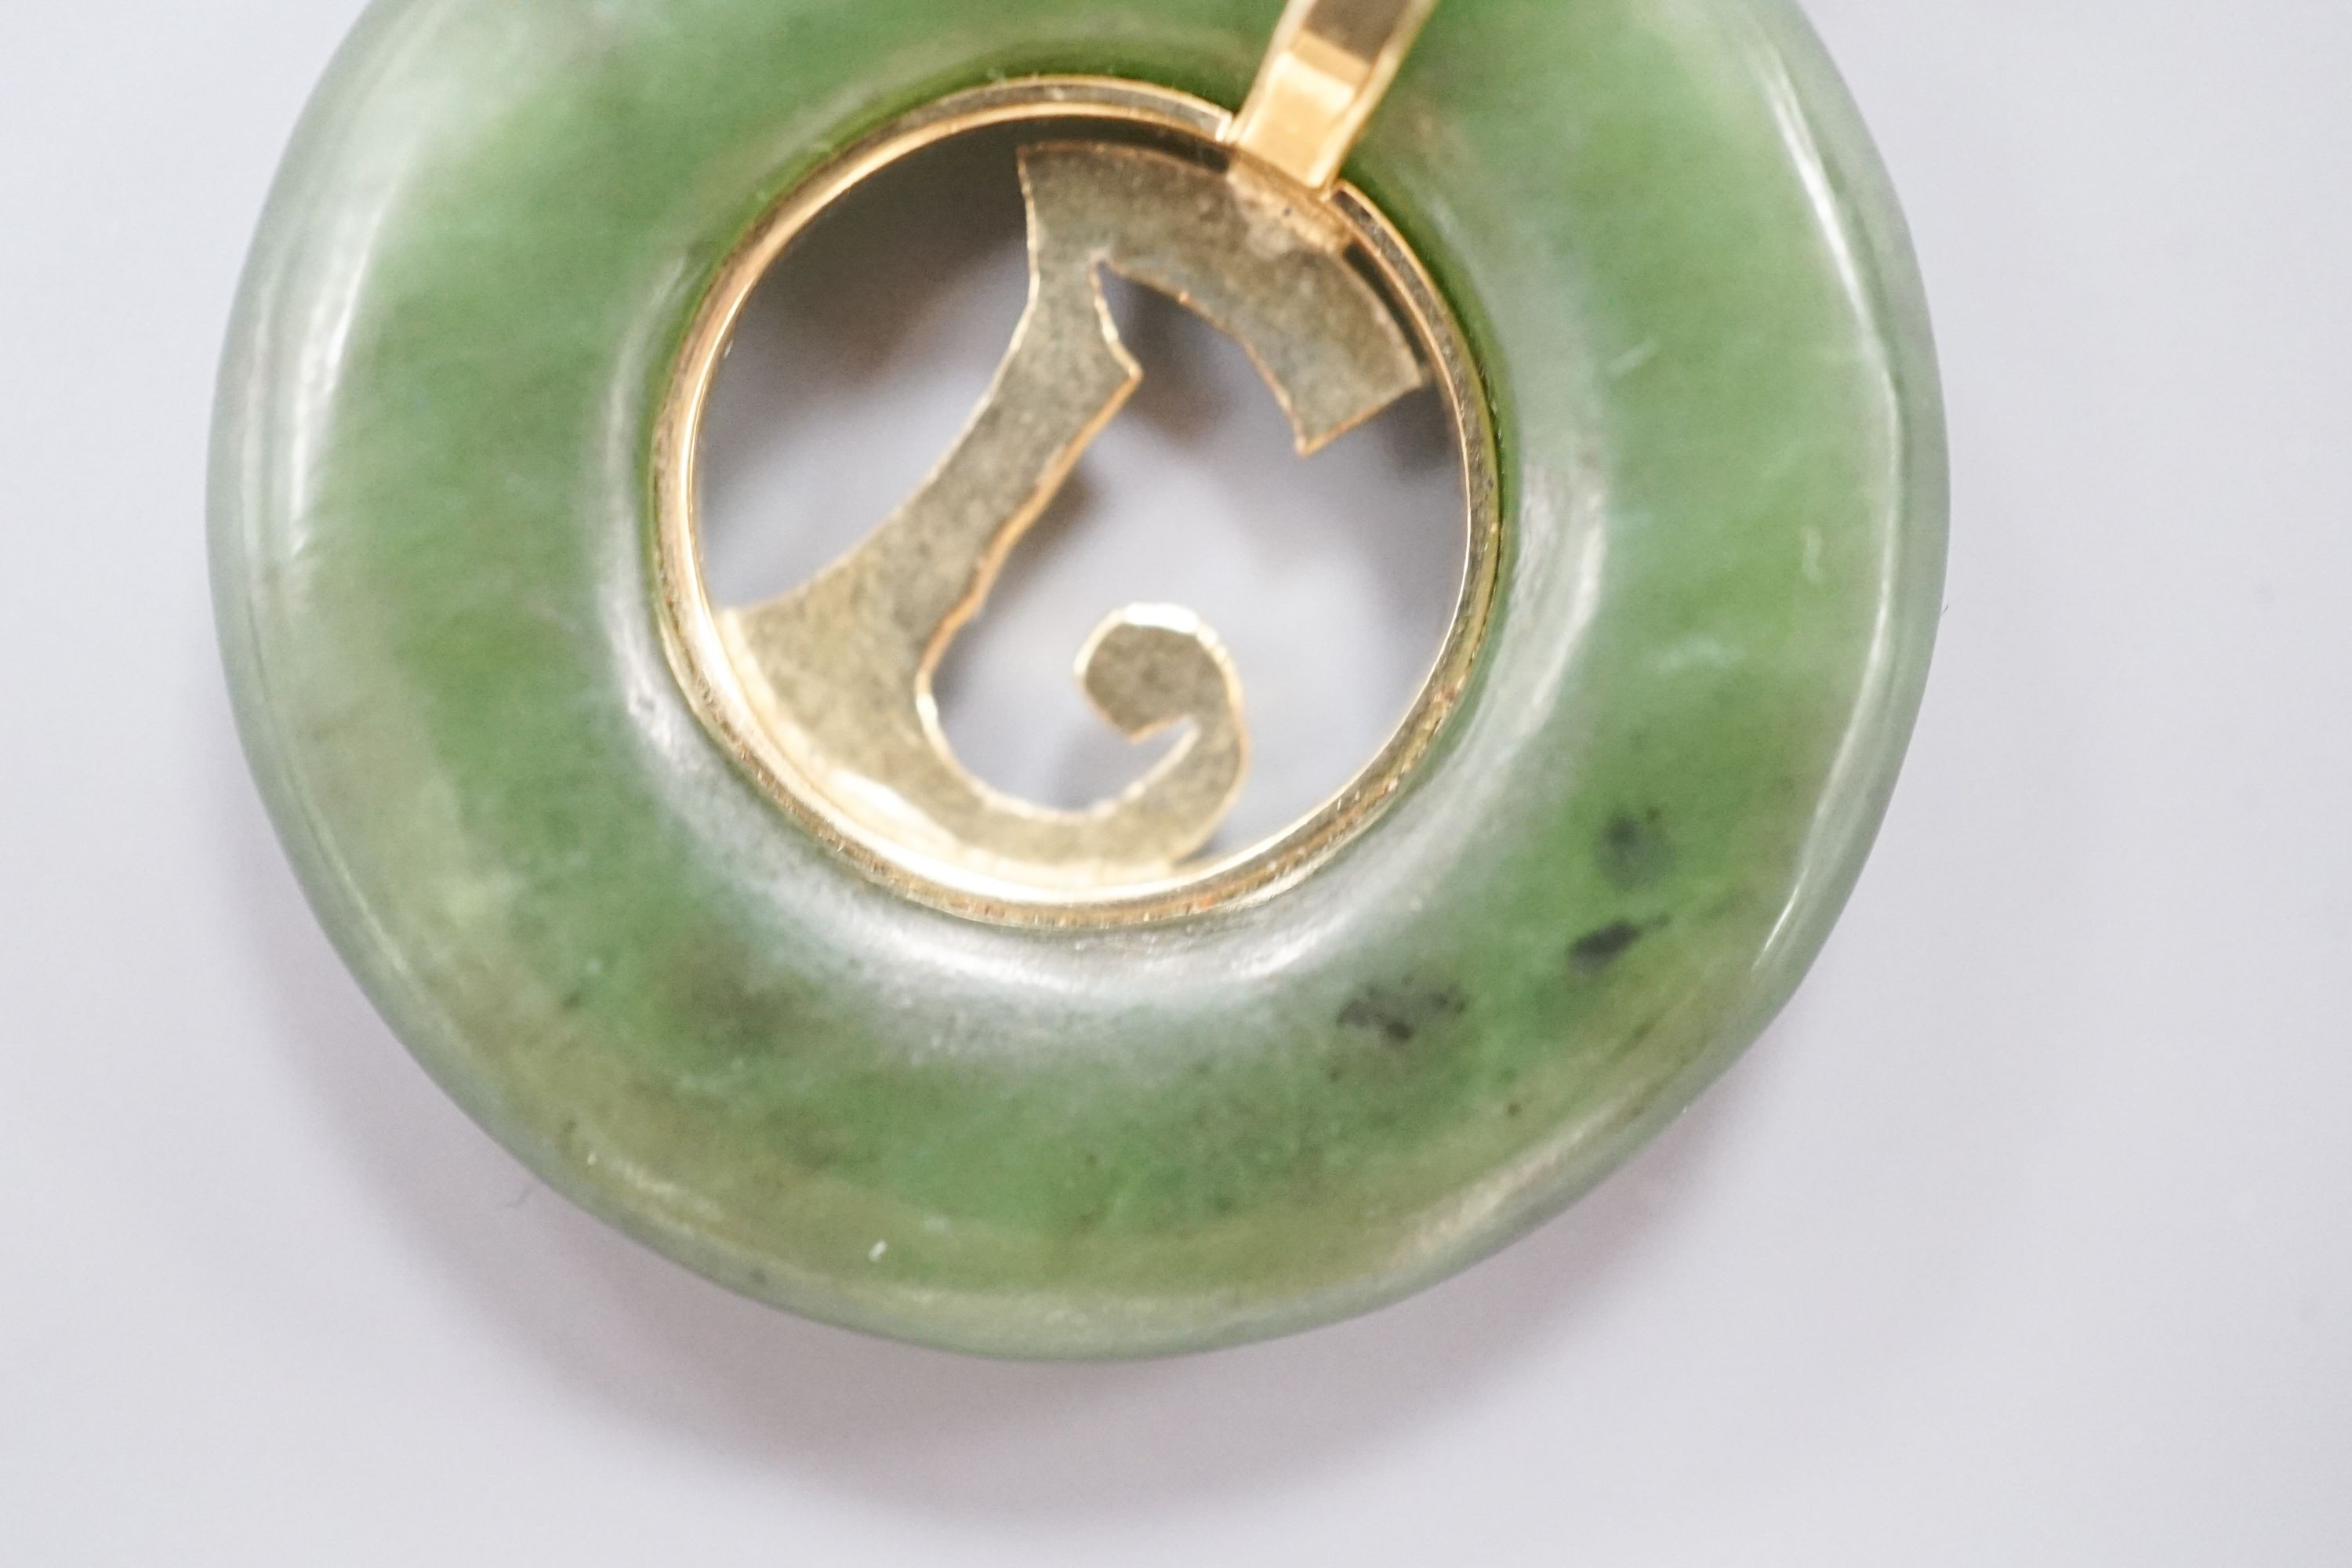 A yellow metal mounted pierced circular nephrite pendant, diameter 29mm, gross weight 8.5 grams.